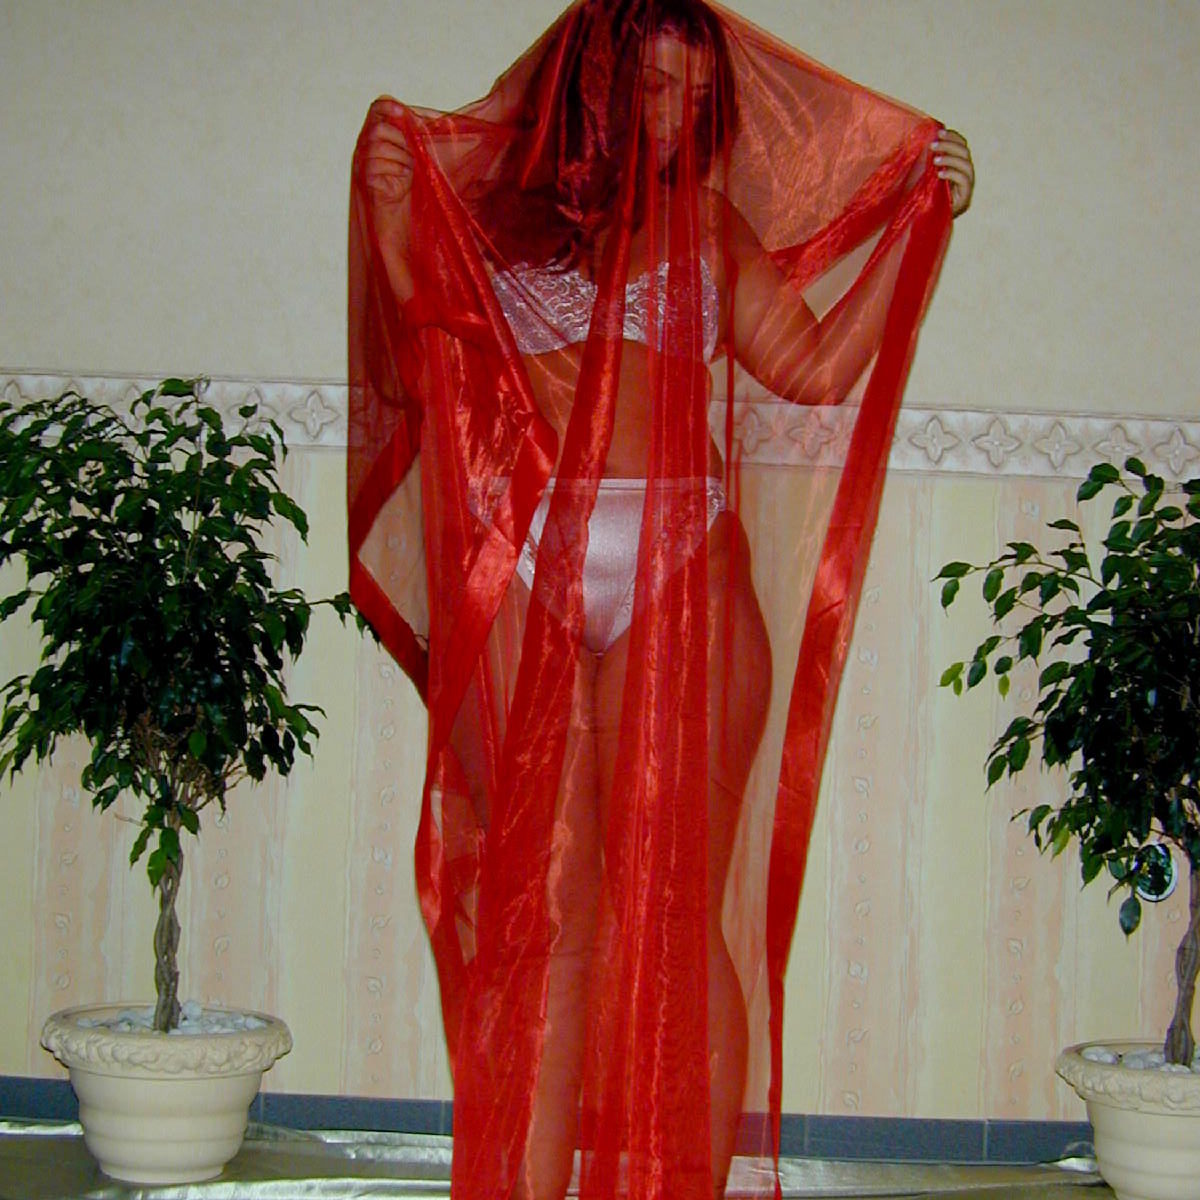 Frau in Unterwäsch versteckt sich hinter einem roten Tuch